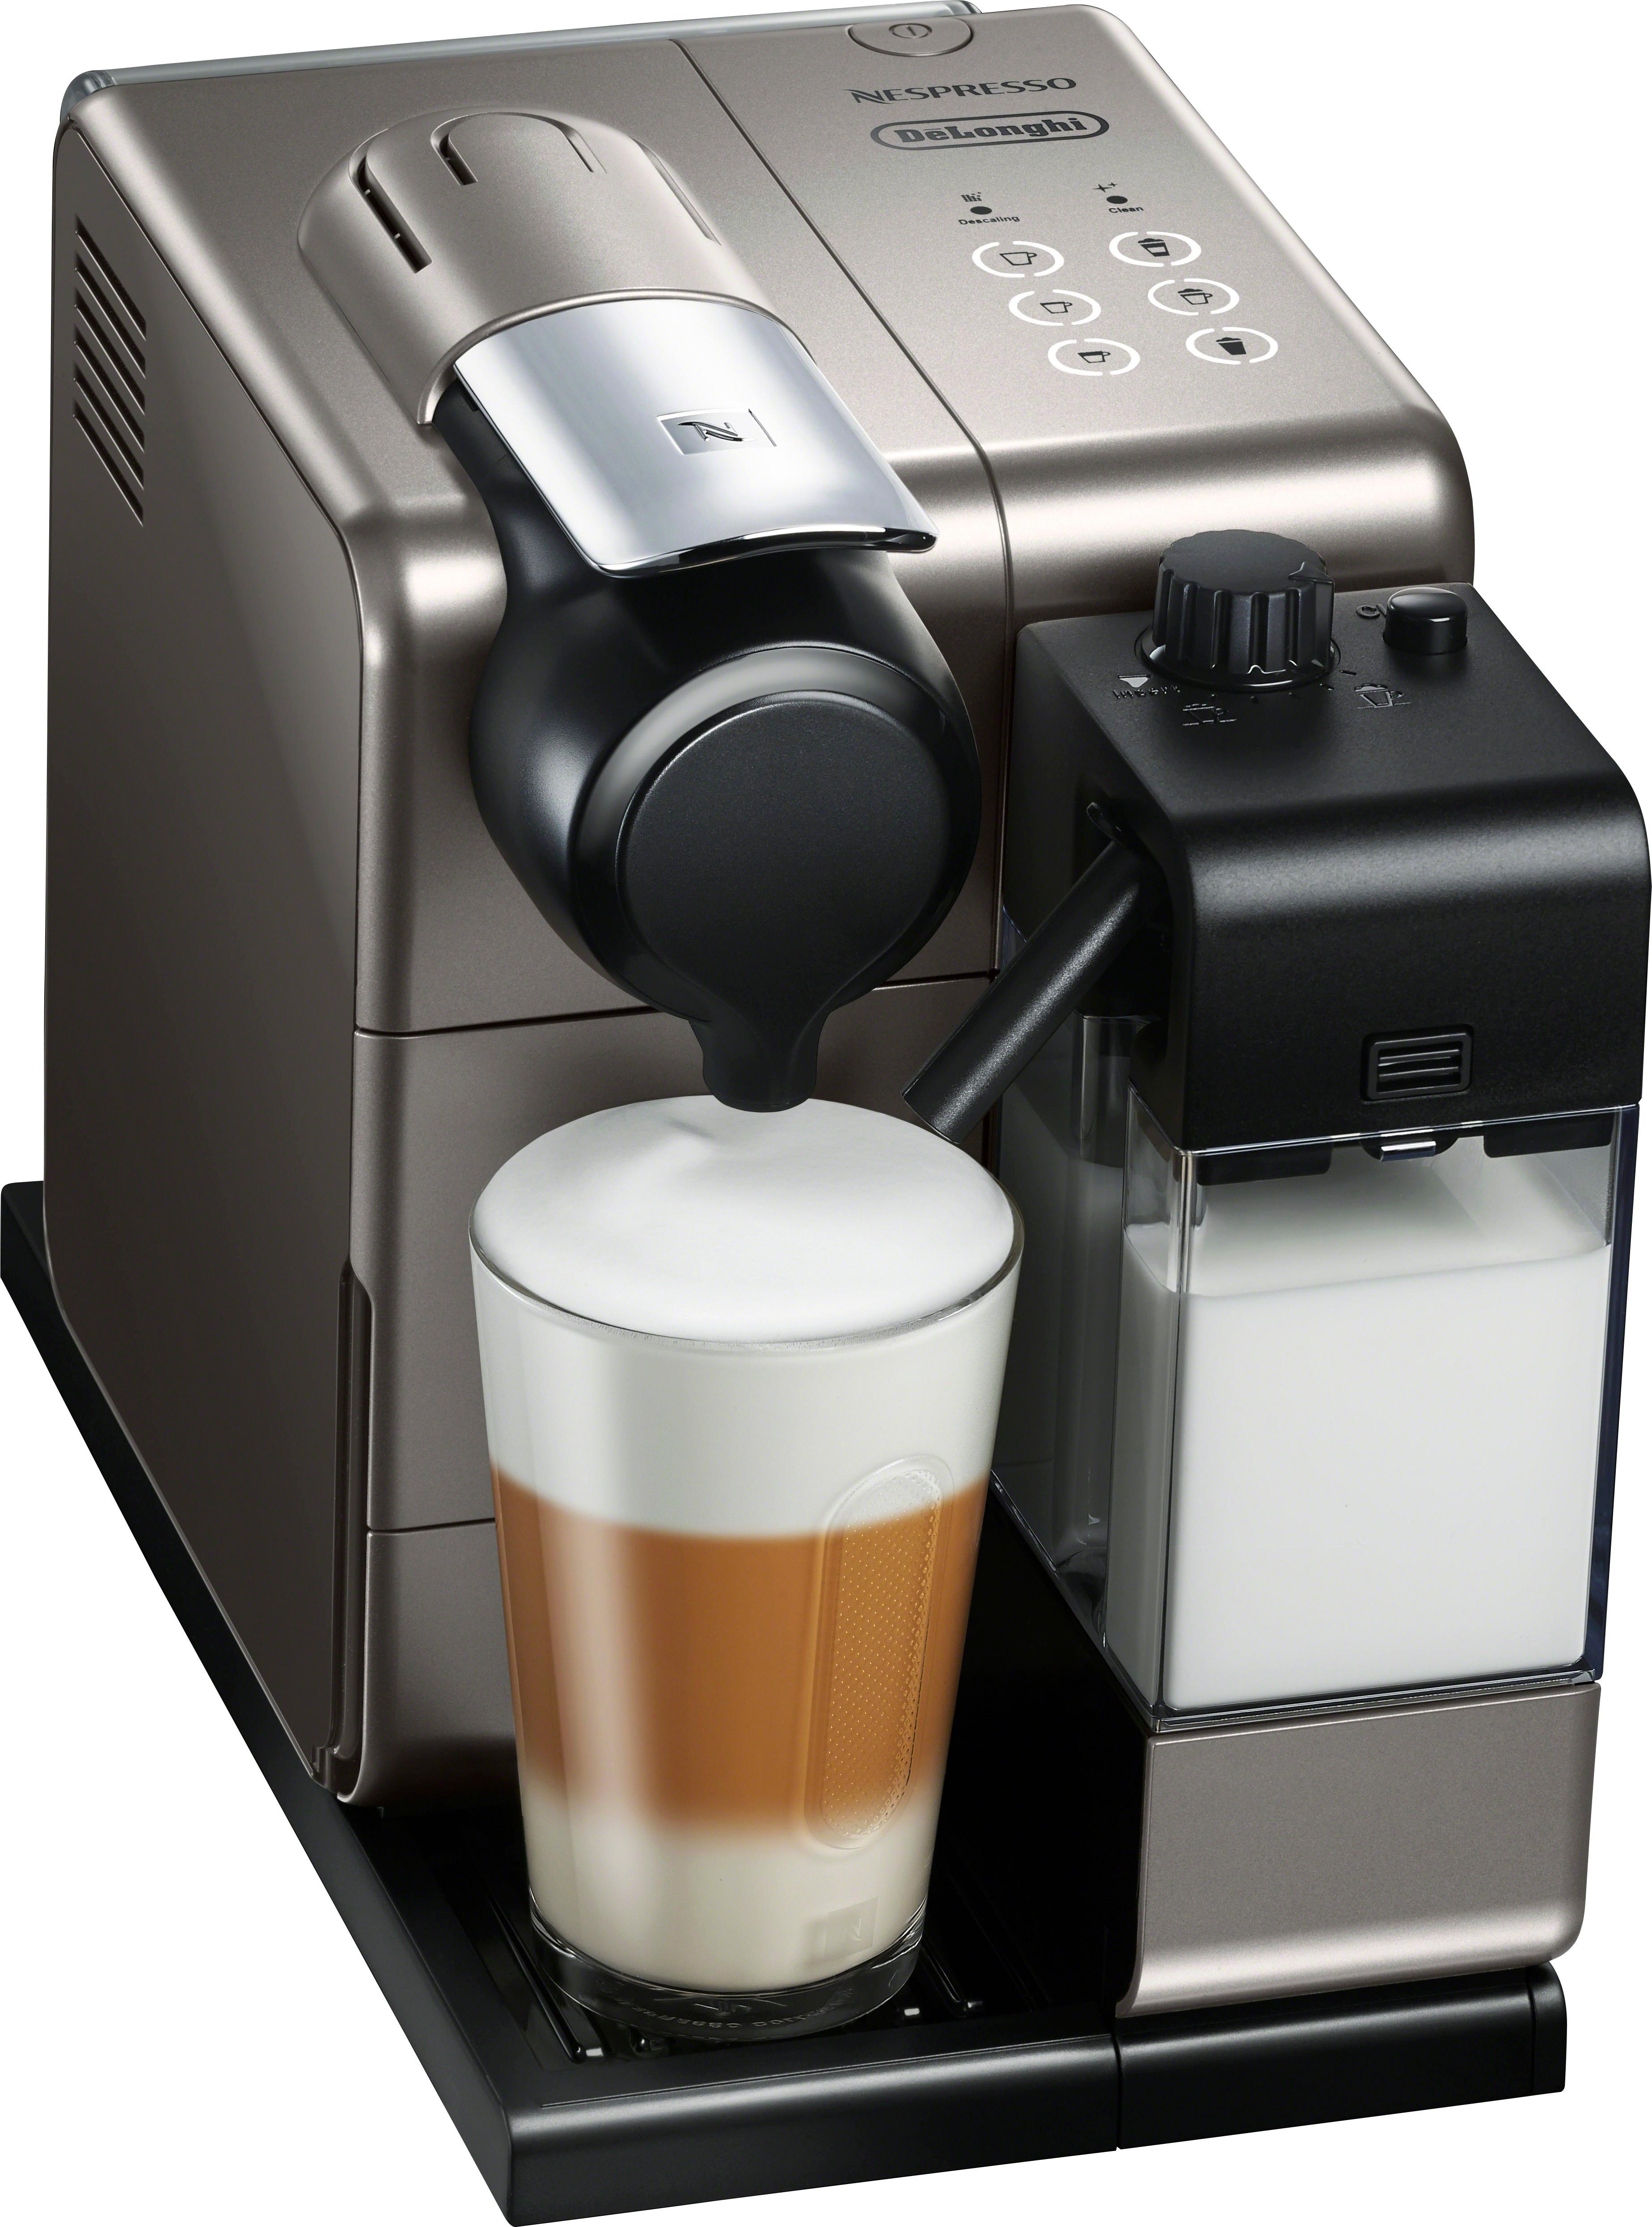 Delonghi Coffee Machine Nespresso Manual Delonghi Nespresso Descaling 